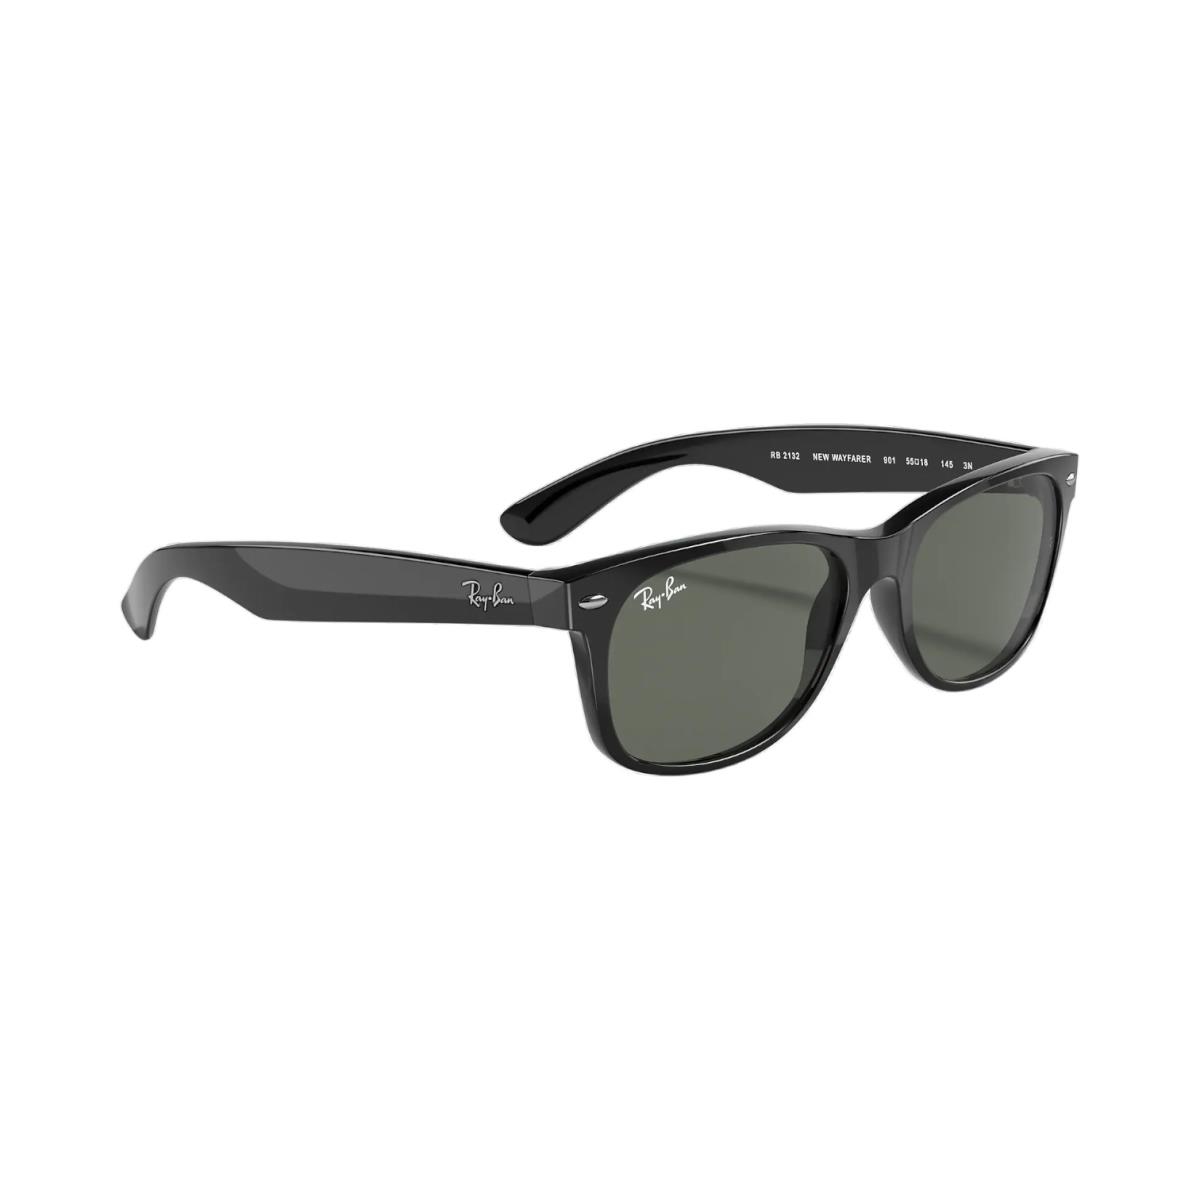 Ray-ban RB2132 Wayfarer Sunglasses - Black Frame G-15 Green Lenses - Frame: Black, Lens: G-15 Green